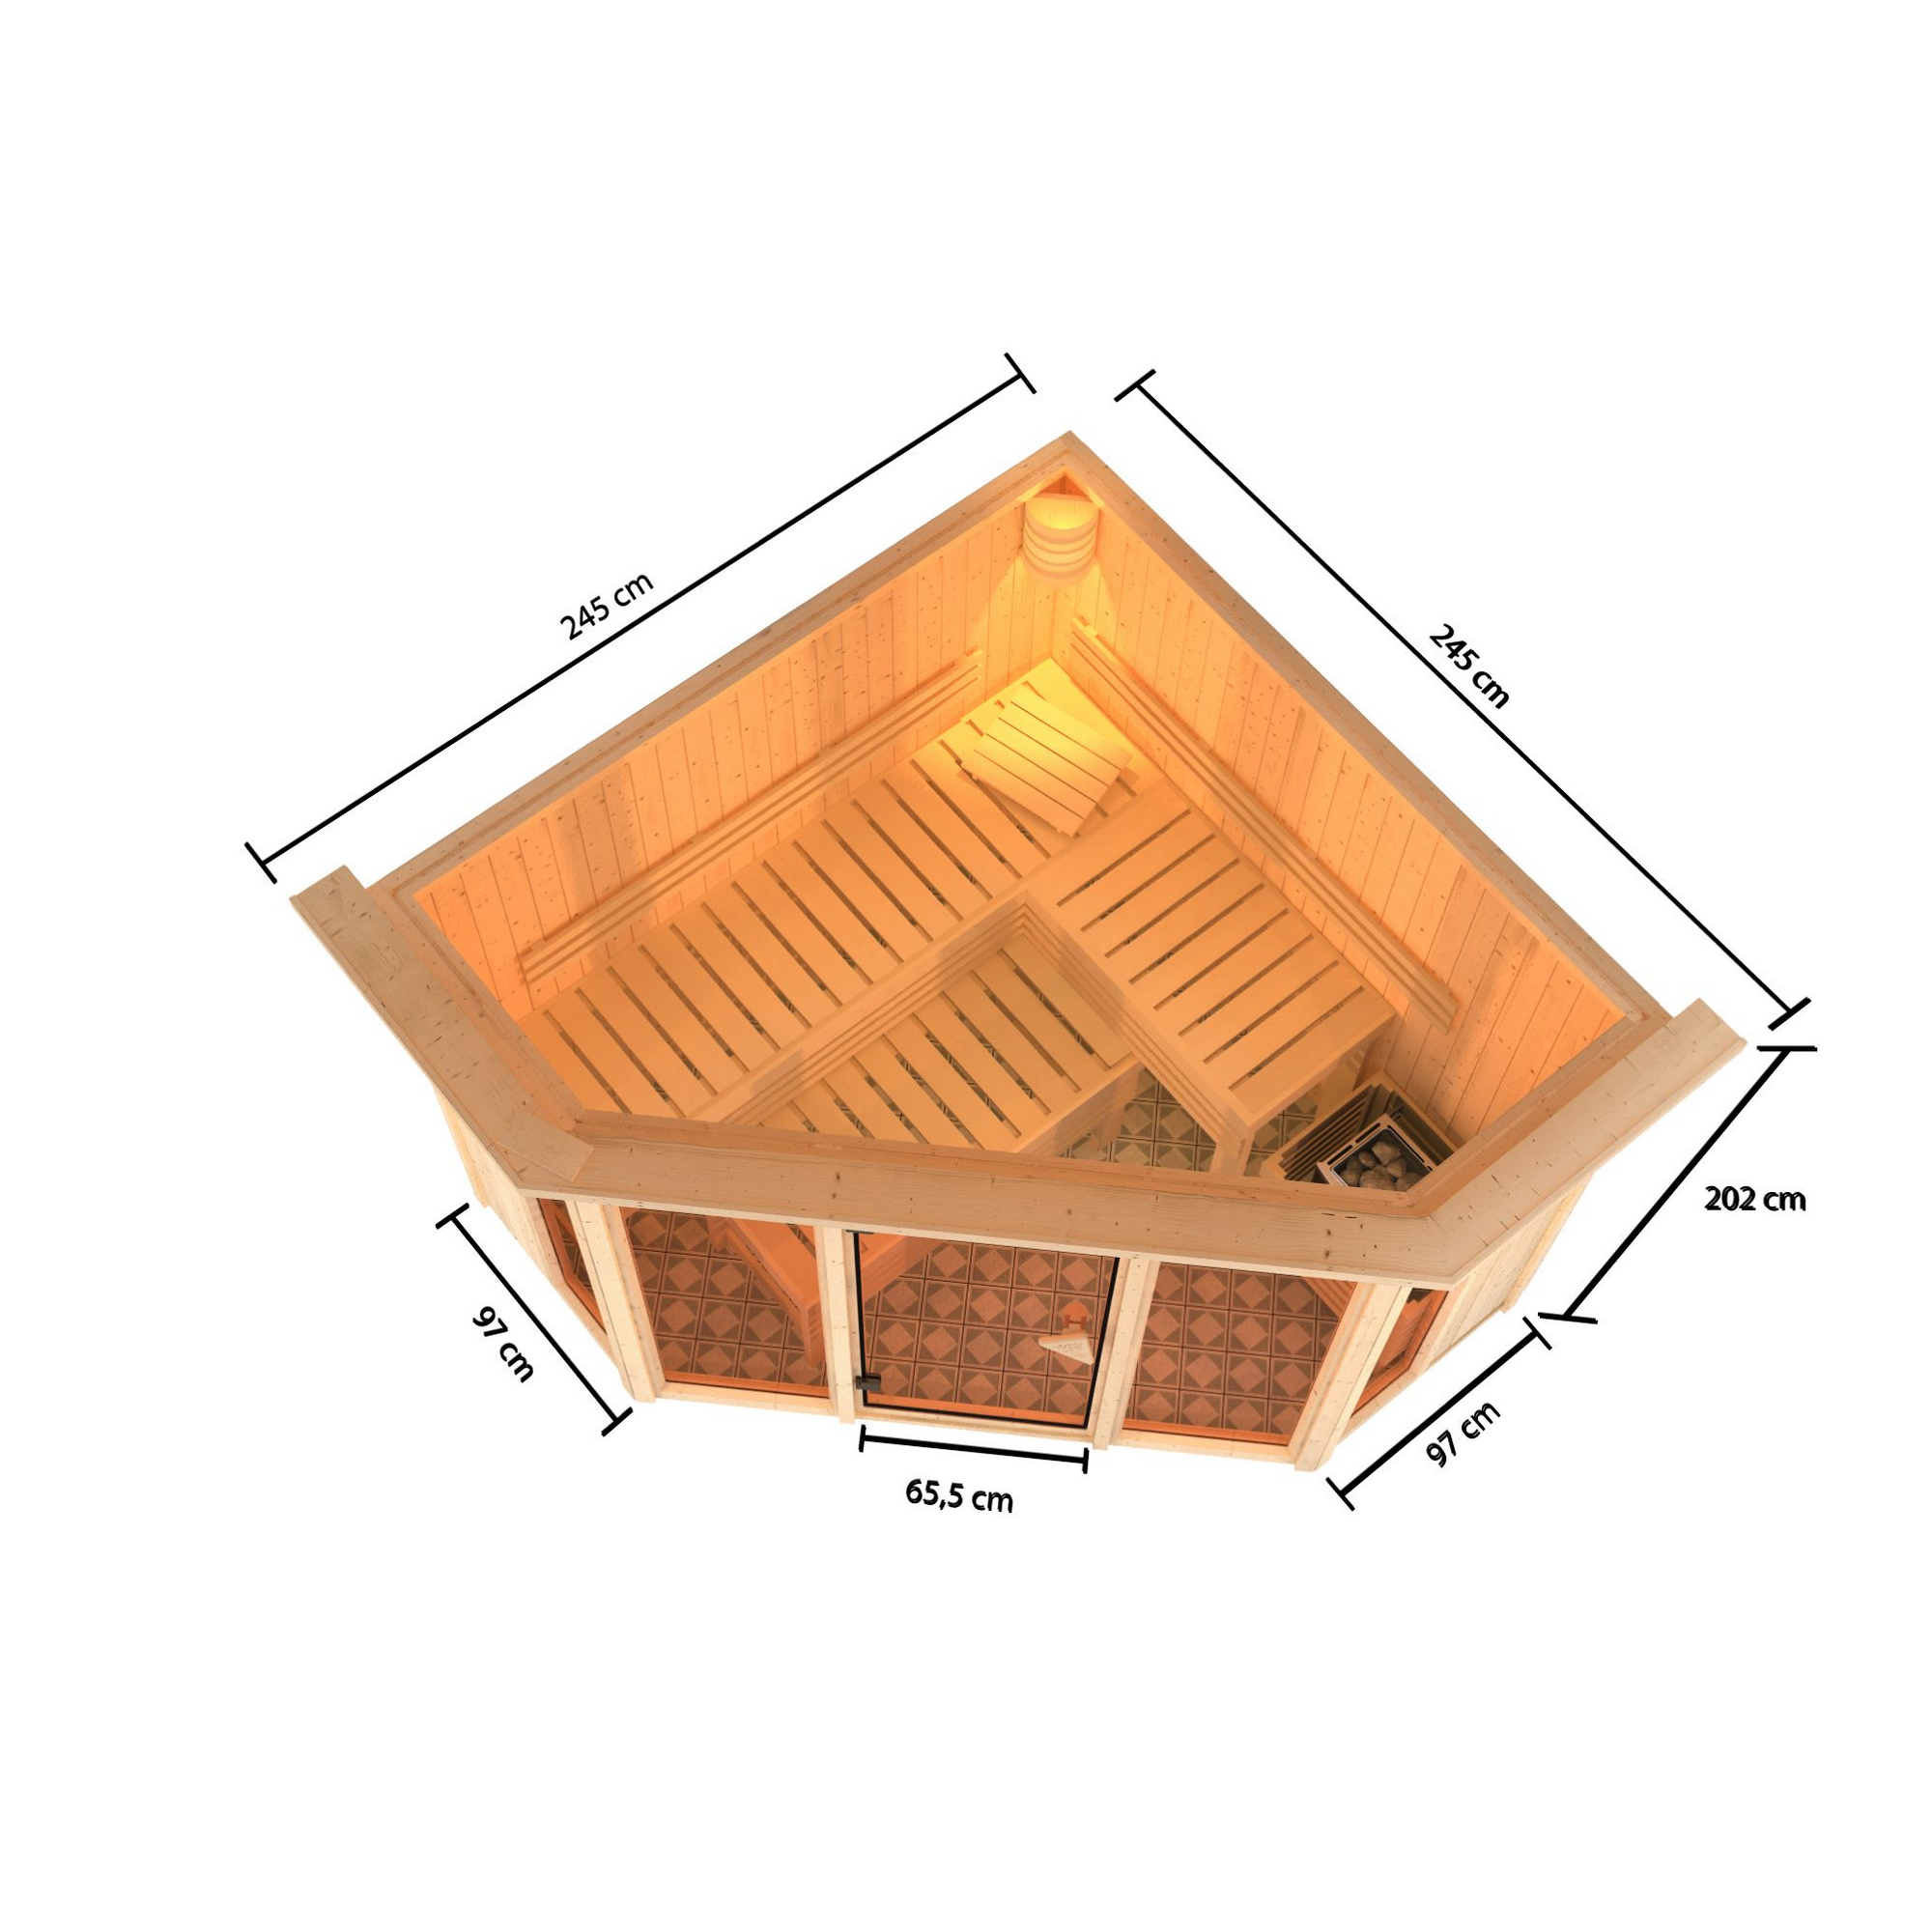 Sauna 'Aurelia 2' naturbelassen mit Kranz und bronzierter Tür 9 kW Bio-Ofen mit externe Steuerung 245 x 245 x 202 cm + product picture